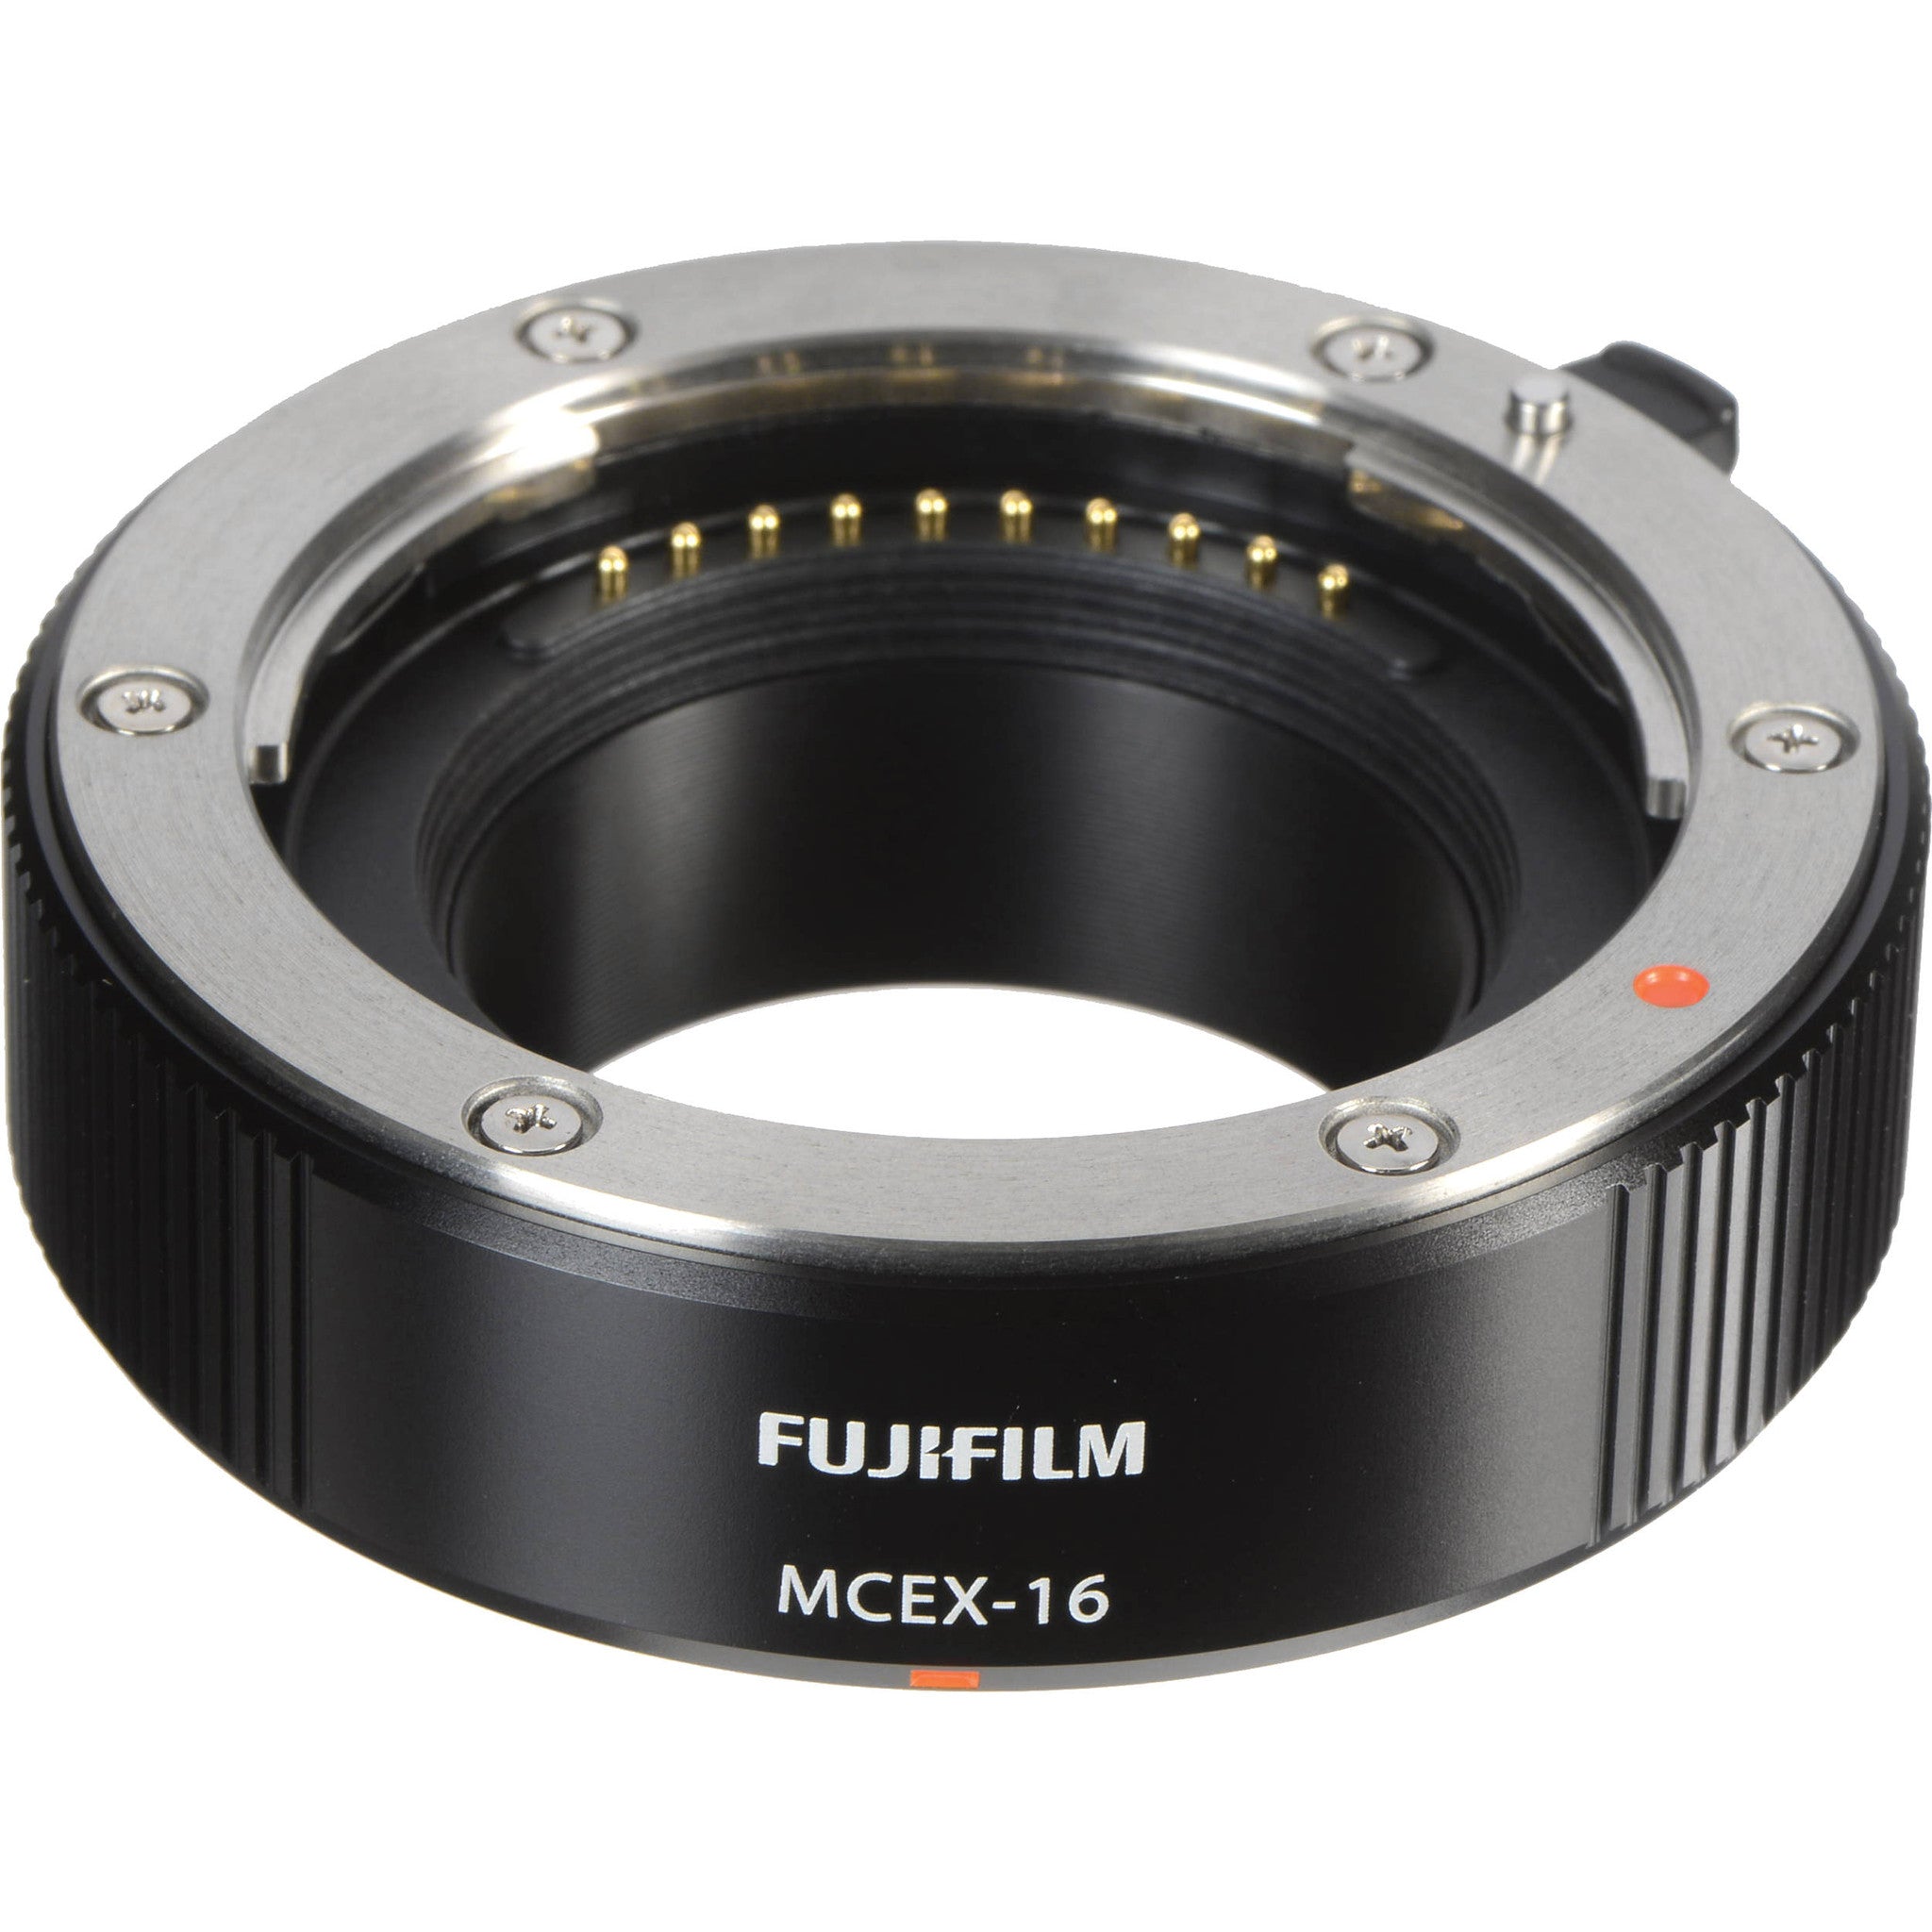 Fujifilm Macro Extension Tube MCEX-16, lenses optics & accessories, Fujifilm - Pictureline  - 2